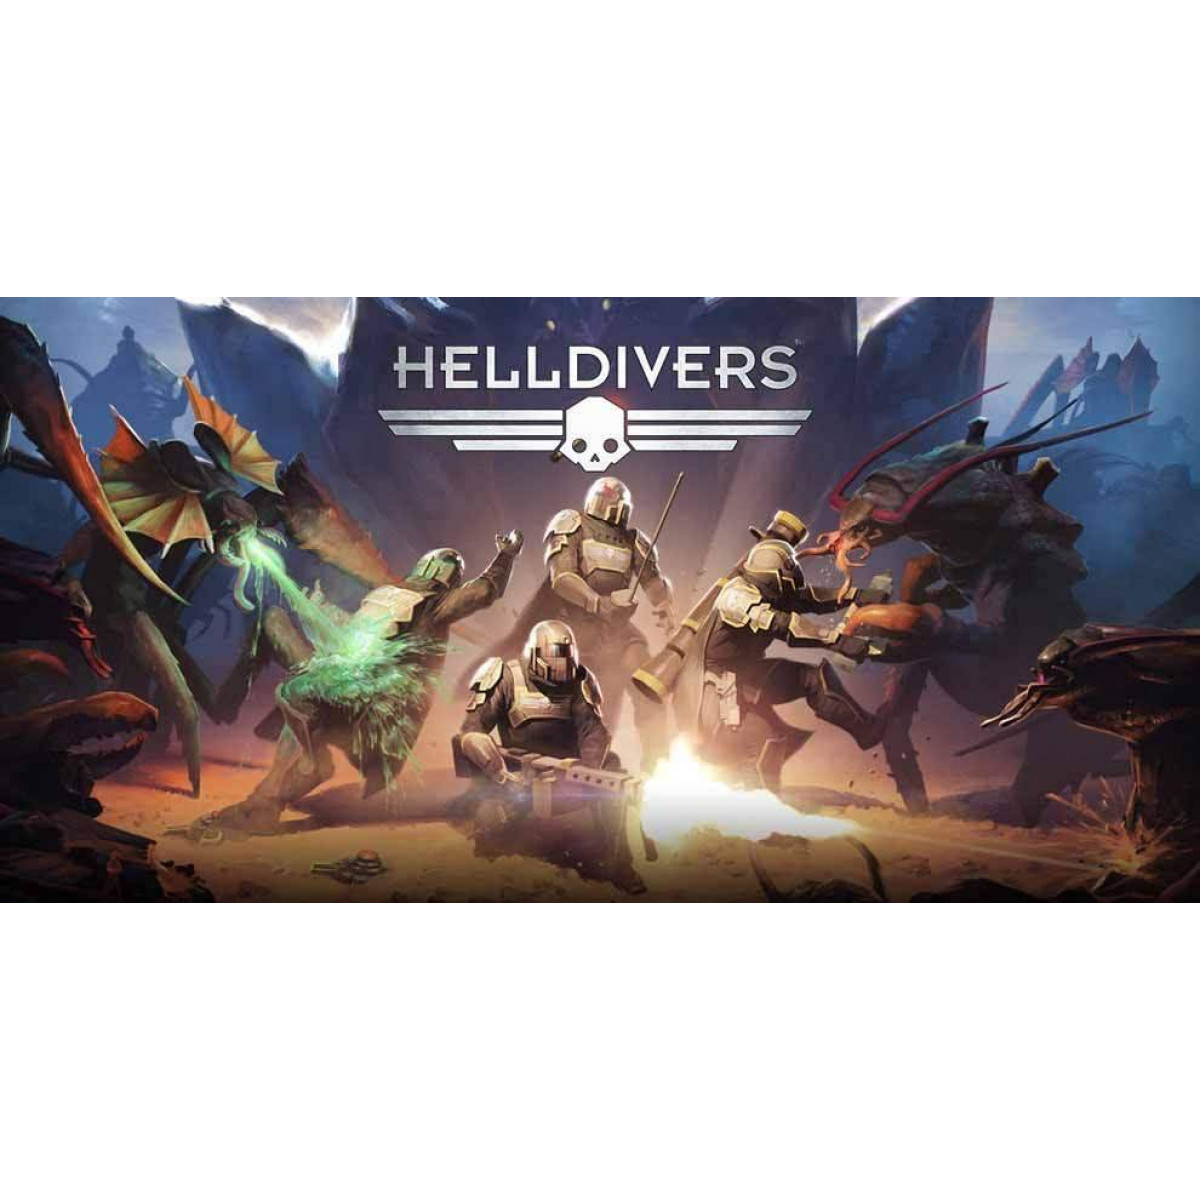 Helldivers gameplay. DLC Helldivers 2. Helldivers 1. Helldivers персонажи арт. Helldivers геймплей.